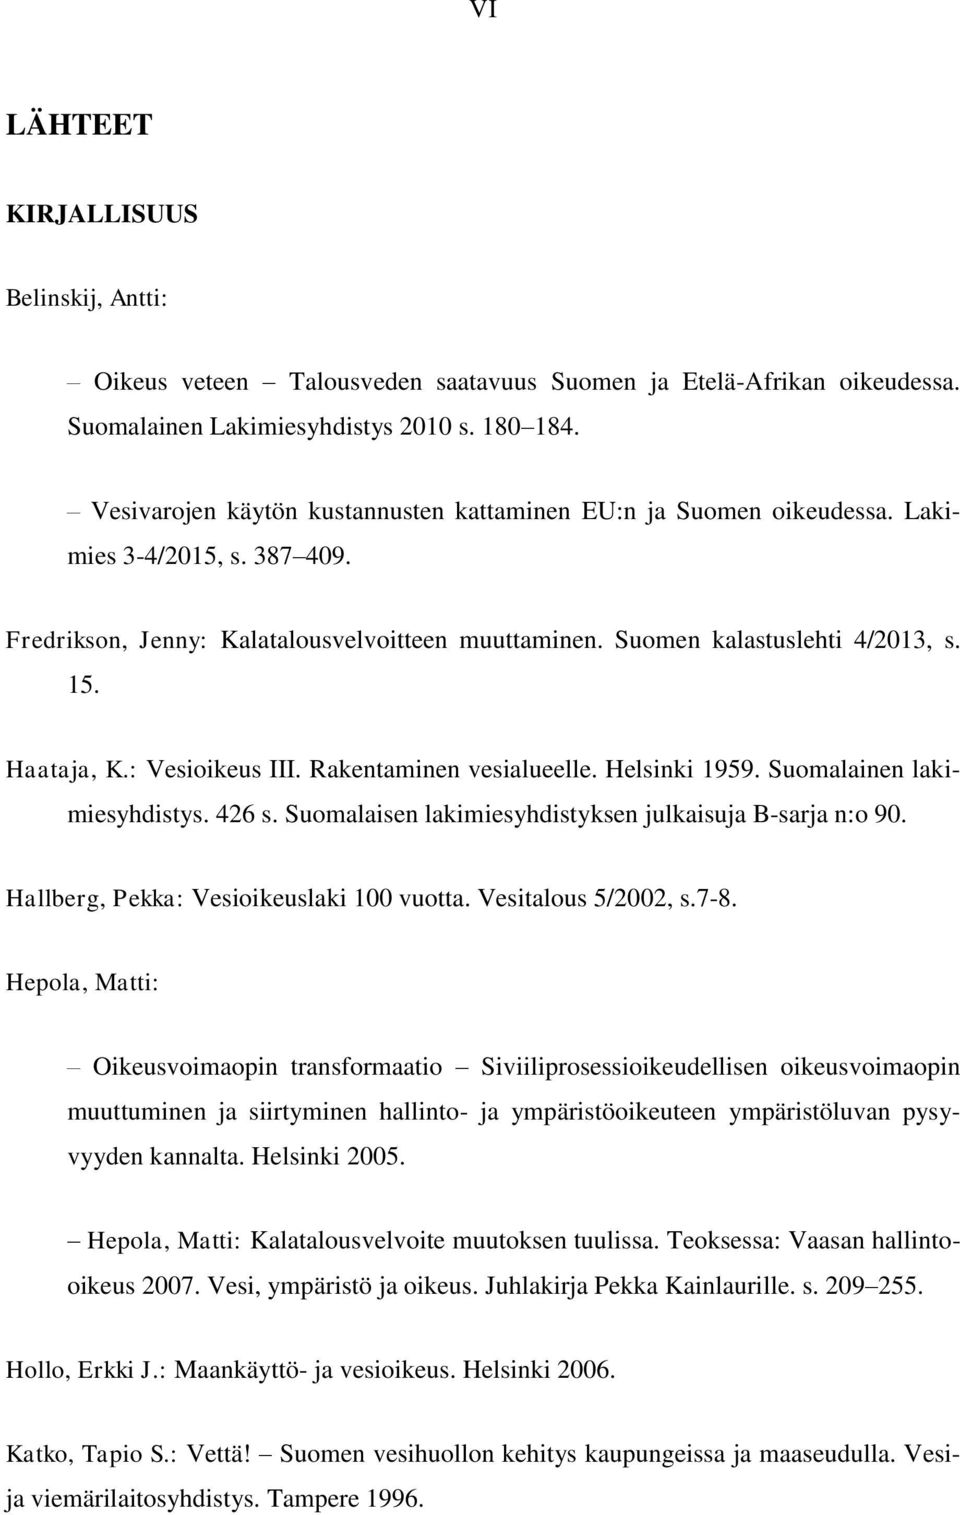 Haataja, K.: Vesioikeus III. Rakentaminen vesialueelle. Helsinki 1959. Suomalainen lakimiesyhdistys. 426 s. Suomalaisen lakimiesyhdistyksen julkaisuja B-sarja n:o 90.